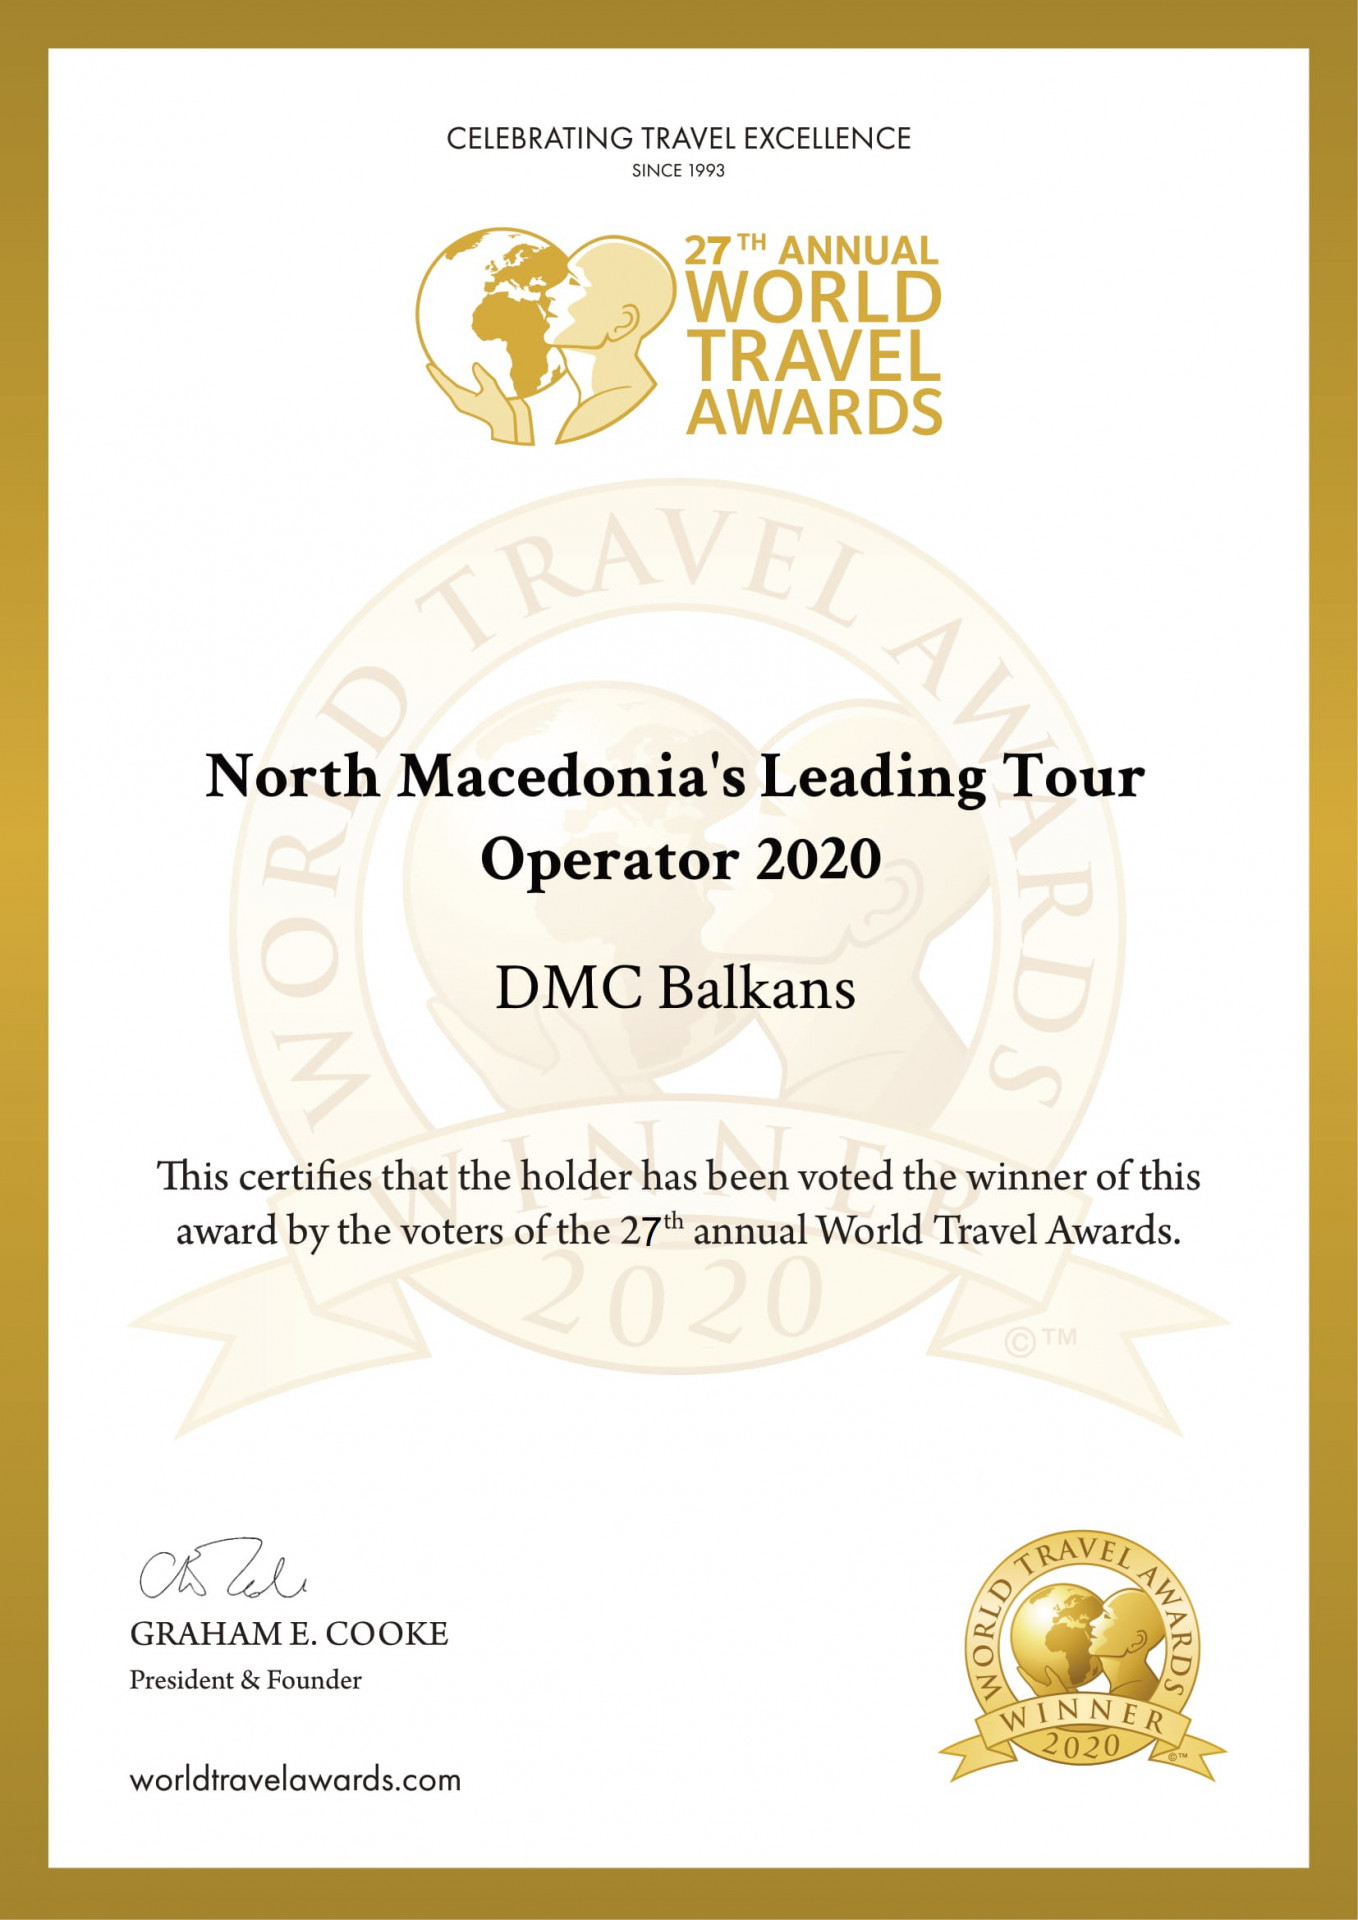 DMC Balkans Travel & Events - Три раза подряд лучший туроператор по въездному туризму в Македонию